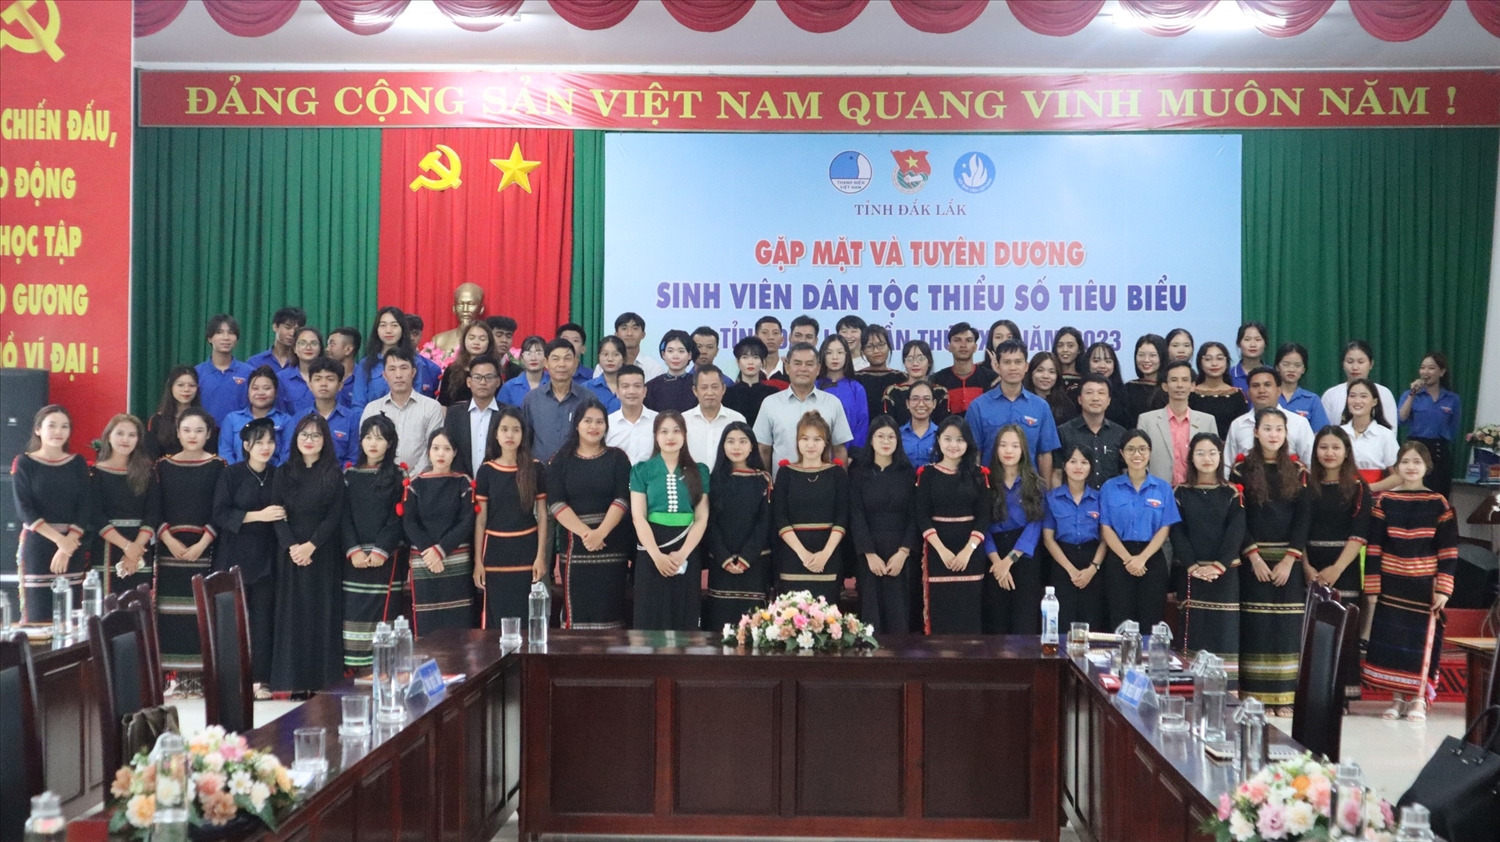 Sinh viên DTTS tỉnh Đắk Lắk tiêu biểu được tuyên dương tại chương trình